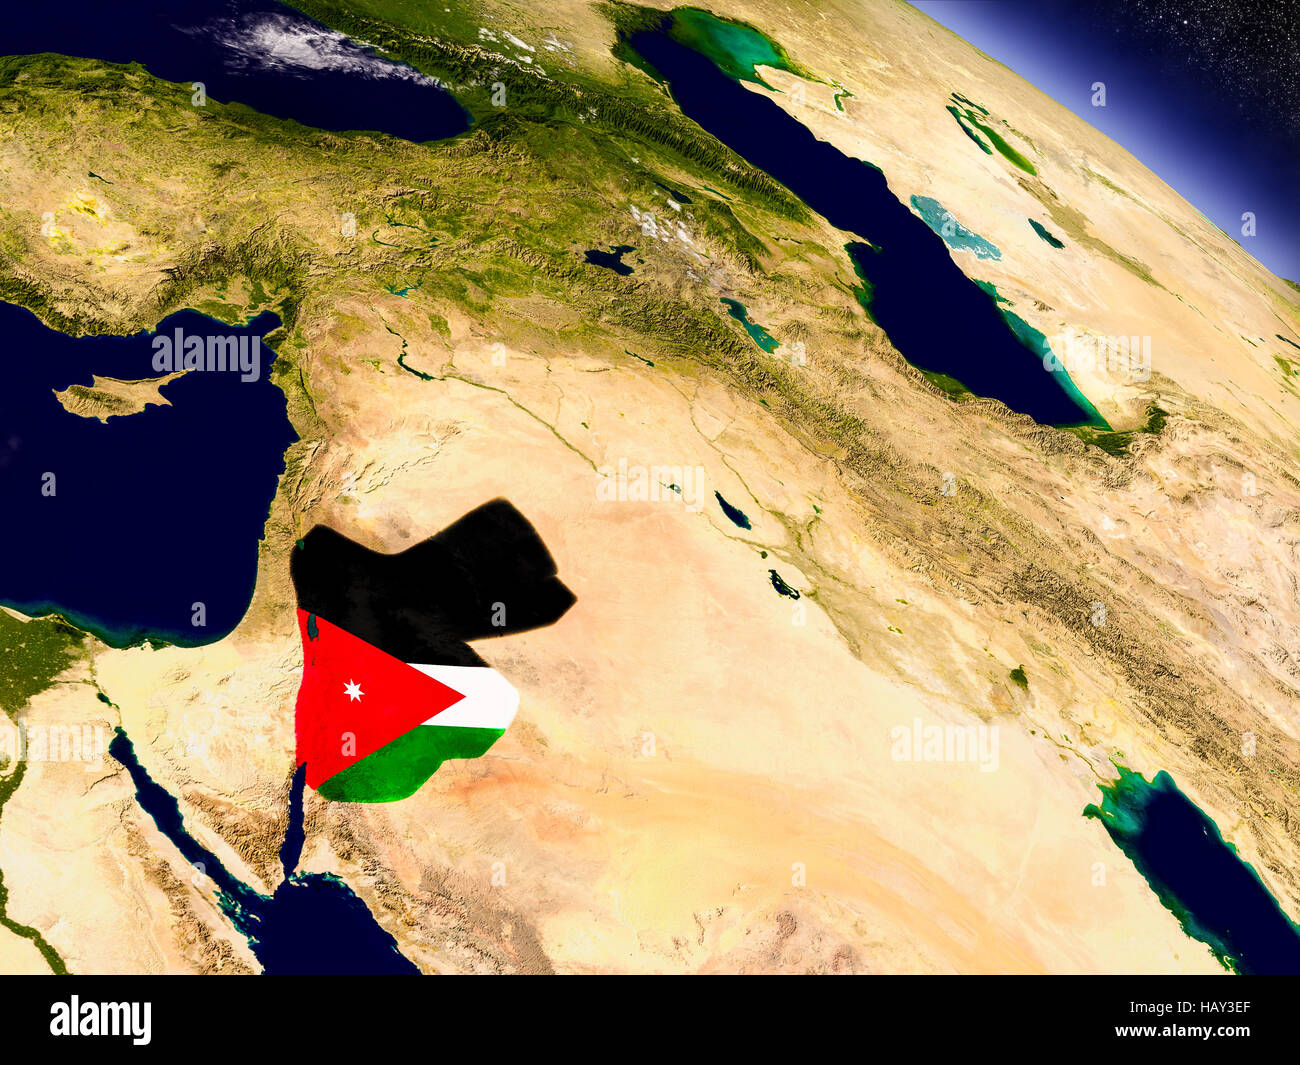 Bandiera della Giordania sulla superficie pianeta dallo spazio. 3D illustrazione con altamente dettagliata pianeta realistico di superficie e le nuvole nell'atmosfera. Elementi di t Foto Stock